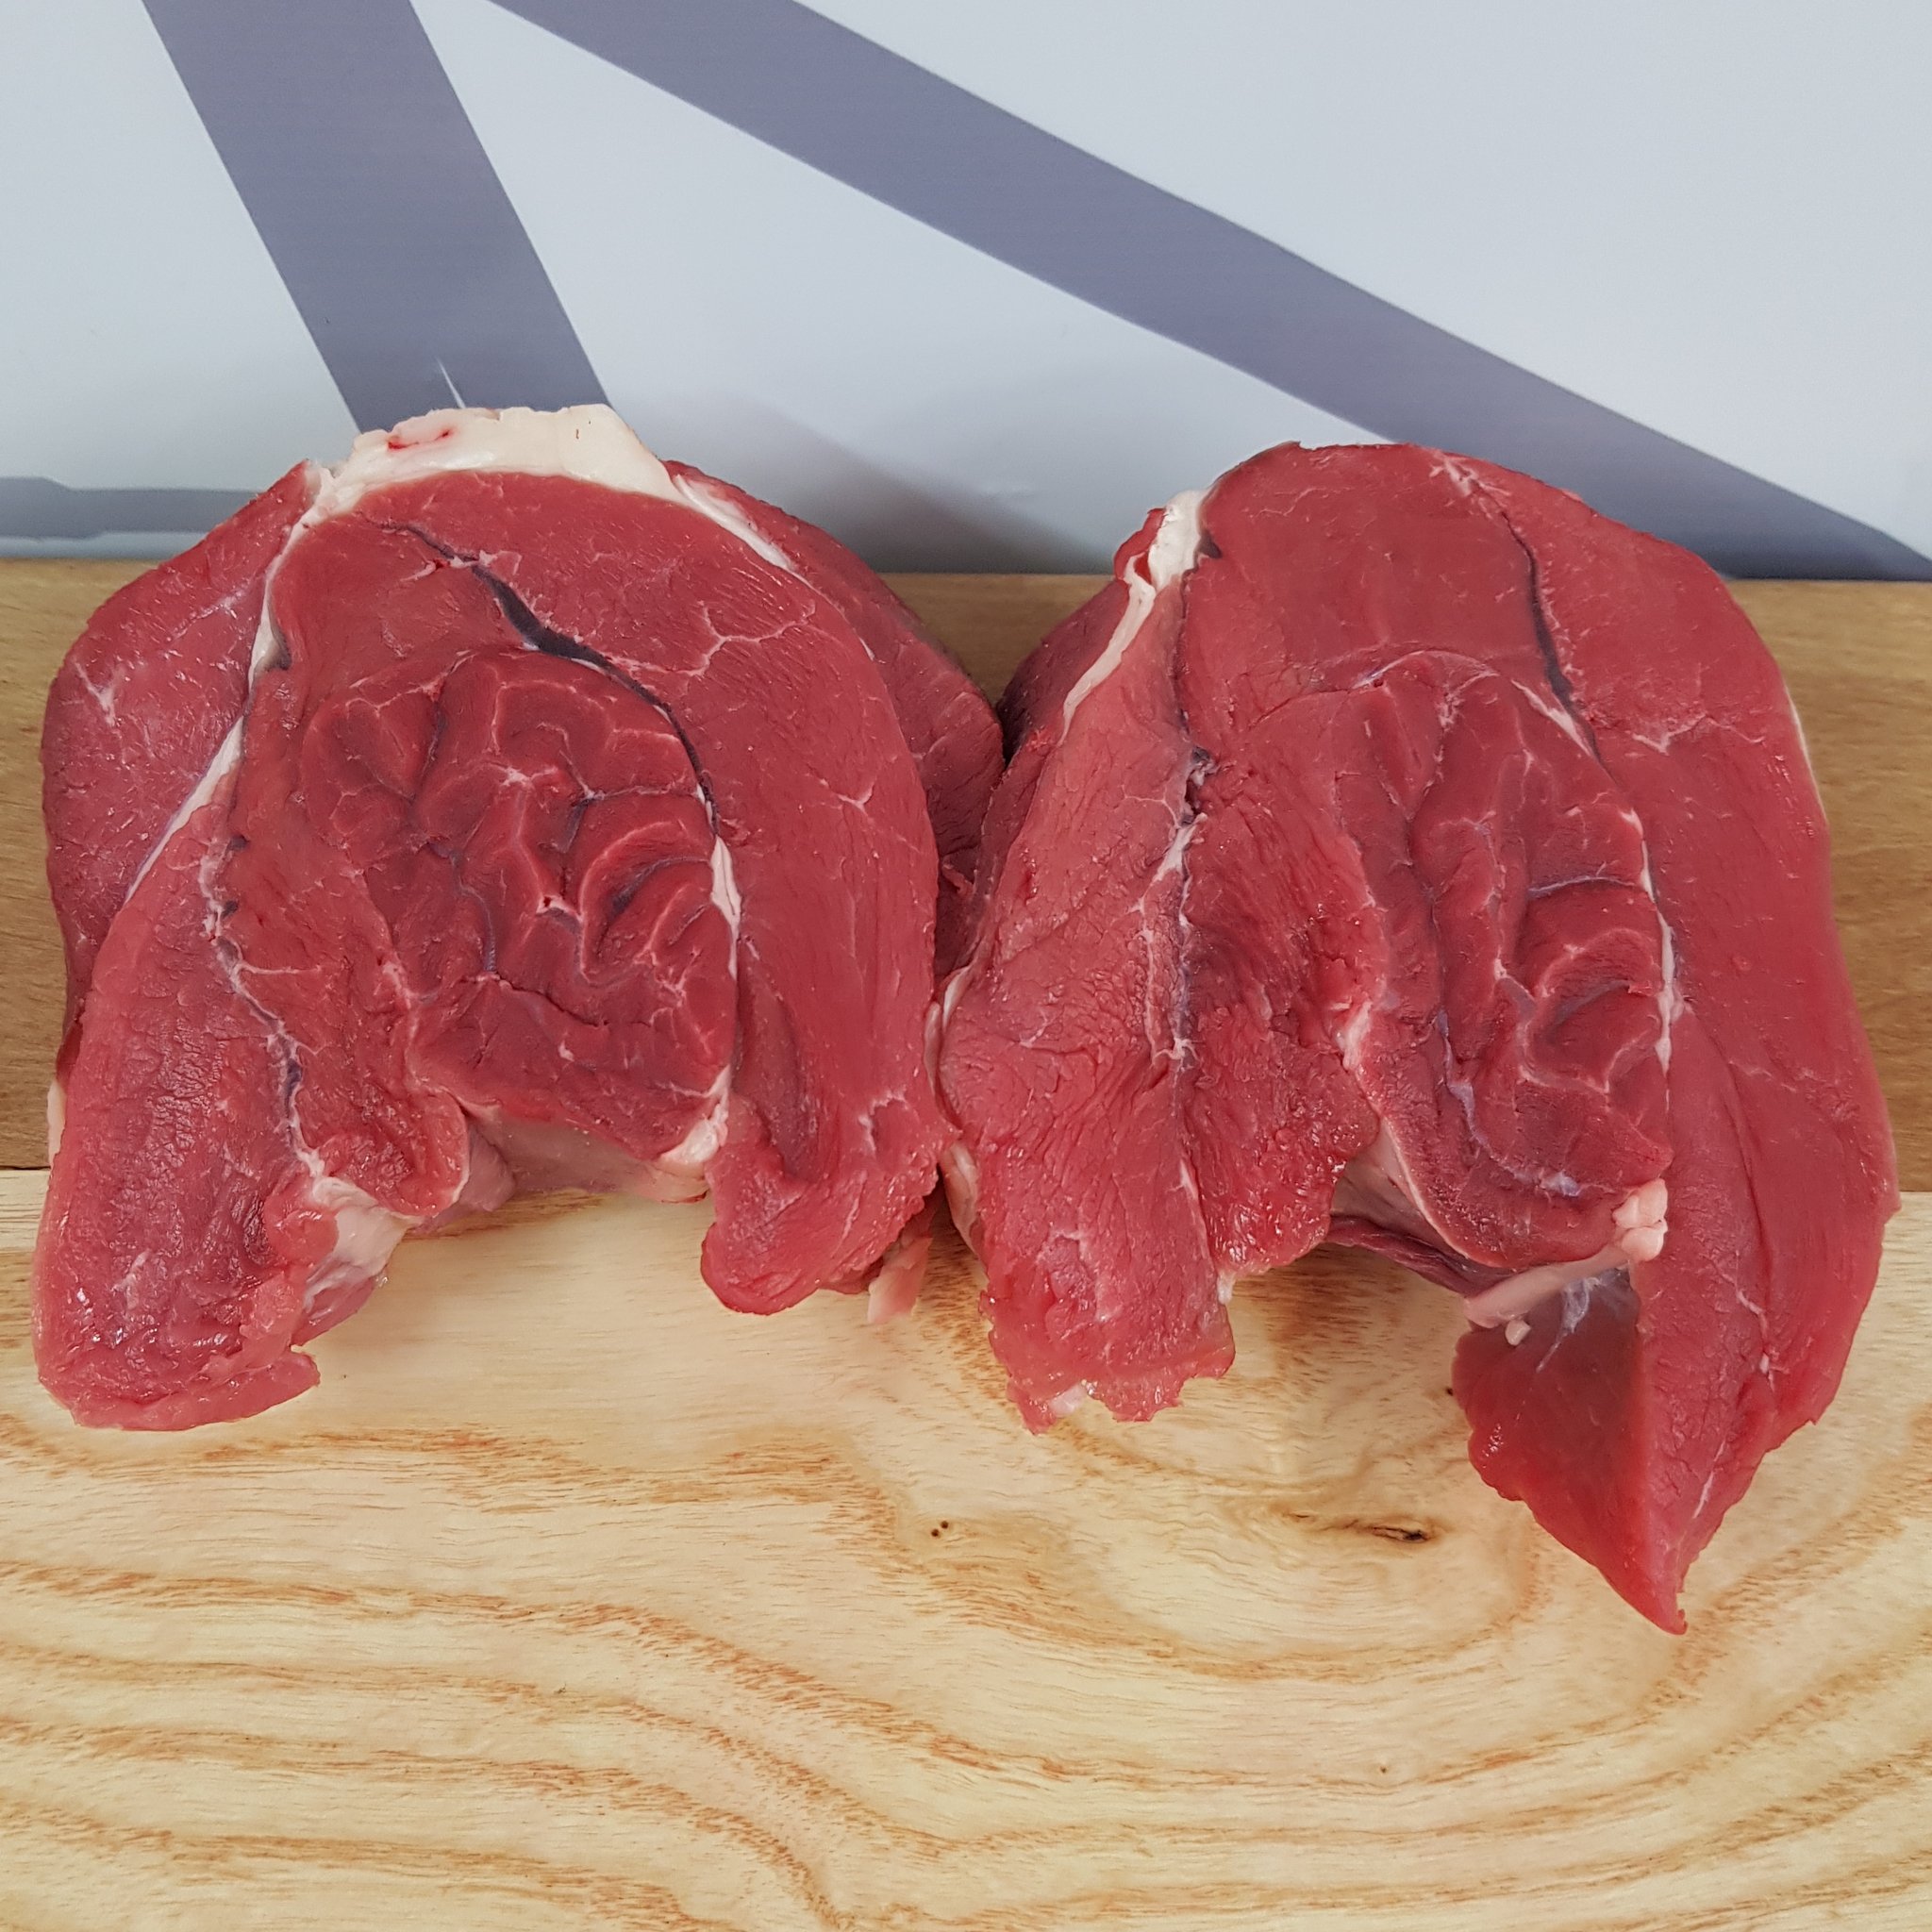 Shin Beef – Halswell Butchery